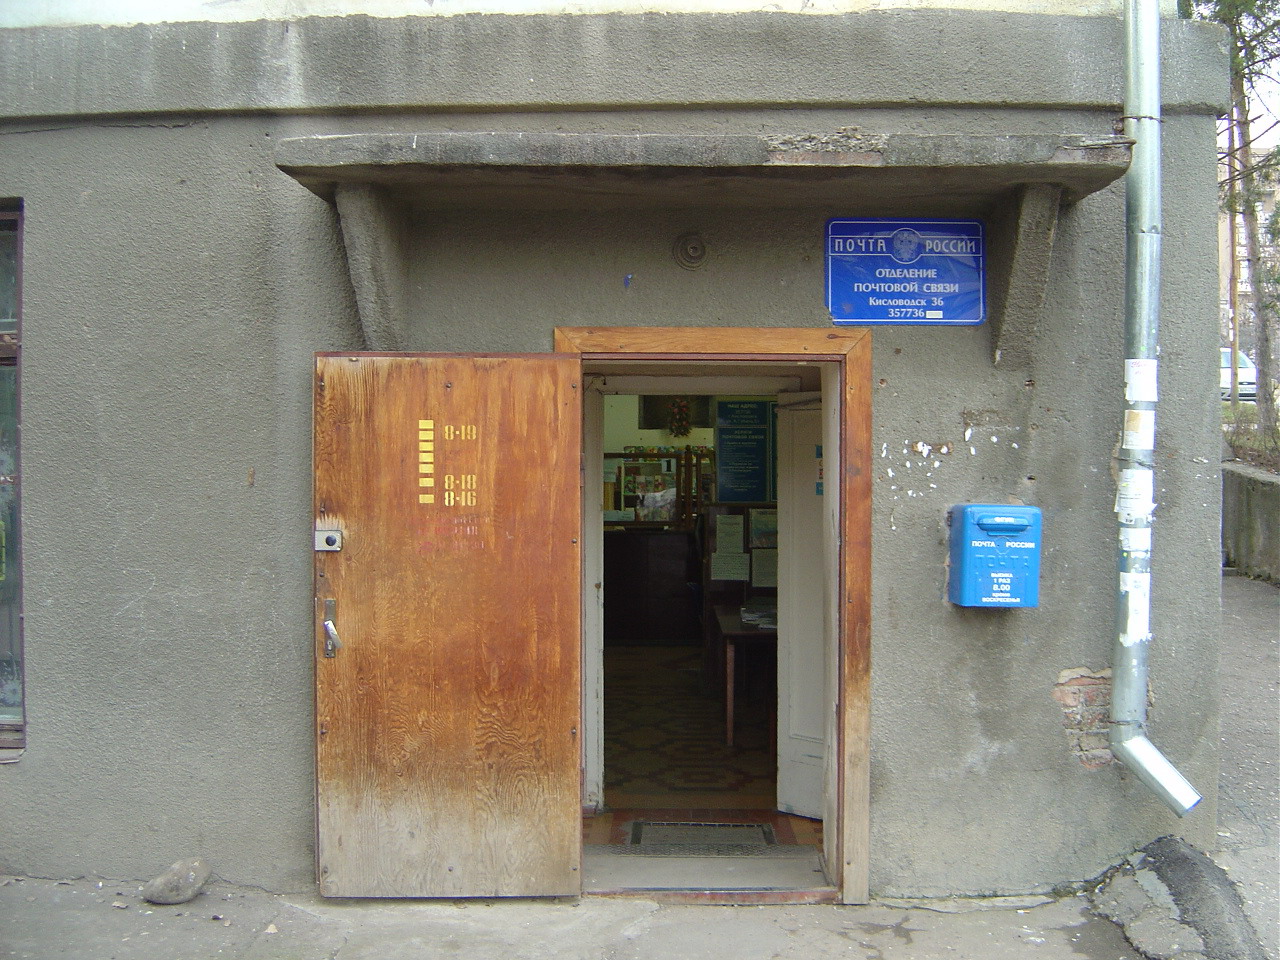 ВХОД, отделение почтовой связи 357736, Ставропольский край, Кисловодск